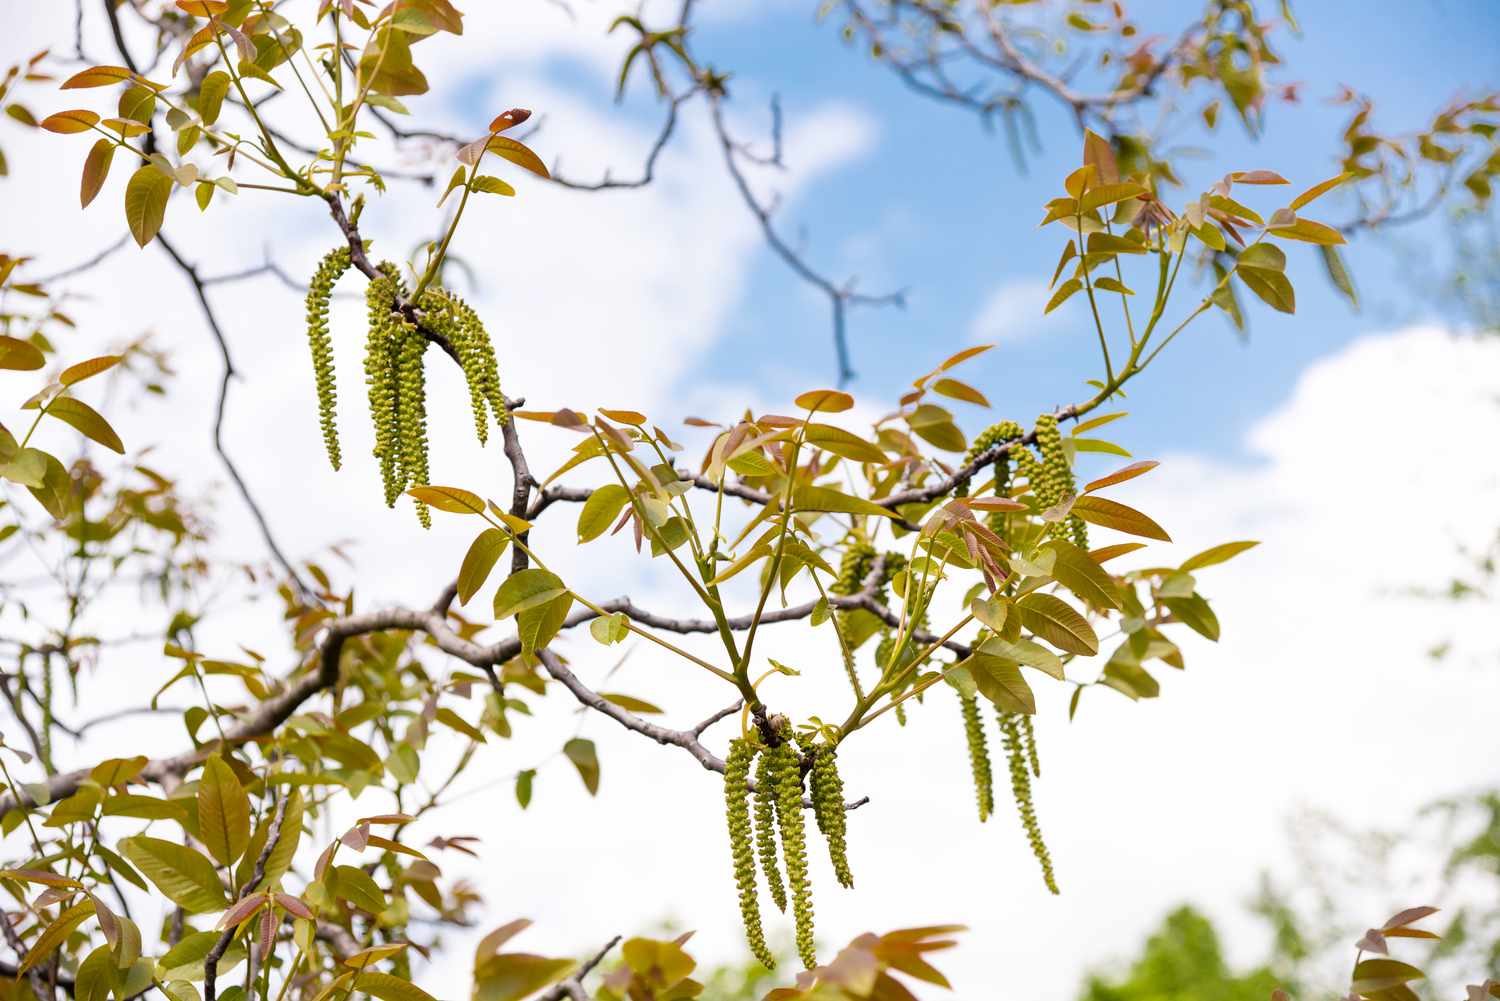 Nogal inglés ramas con hojas verde rojizas y nueces verde claro colgando